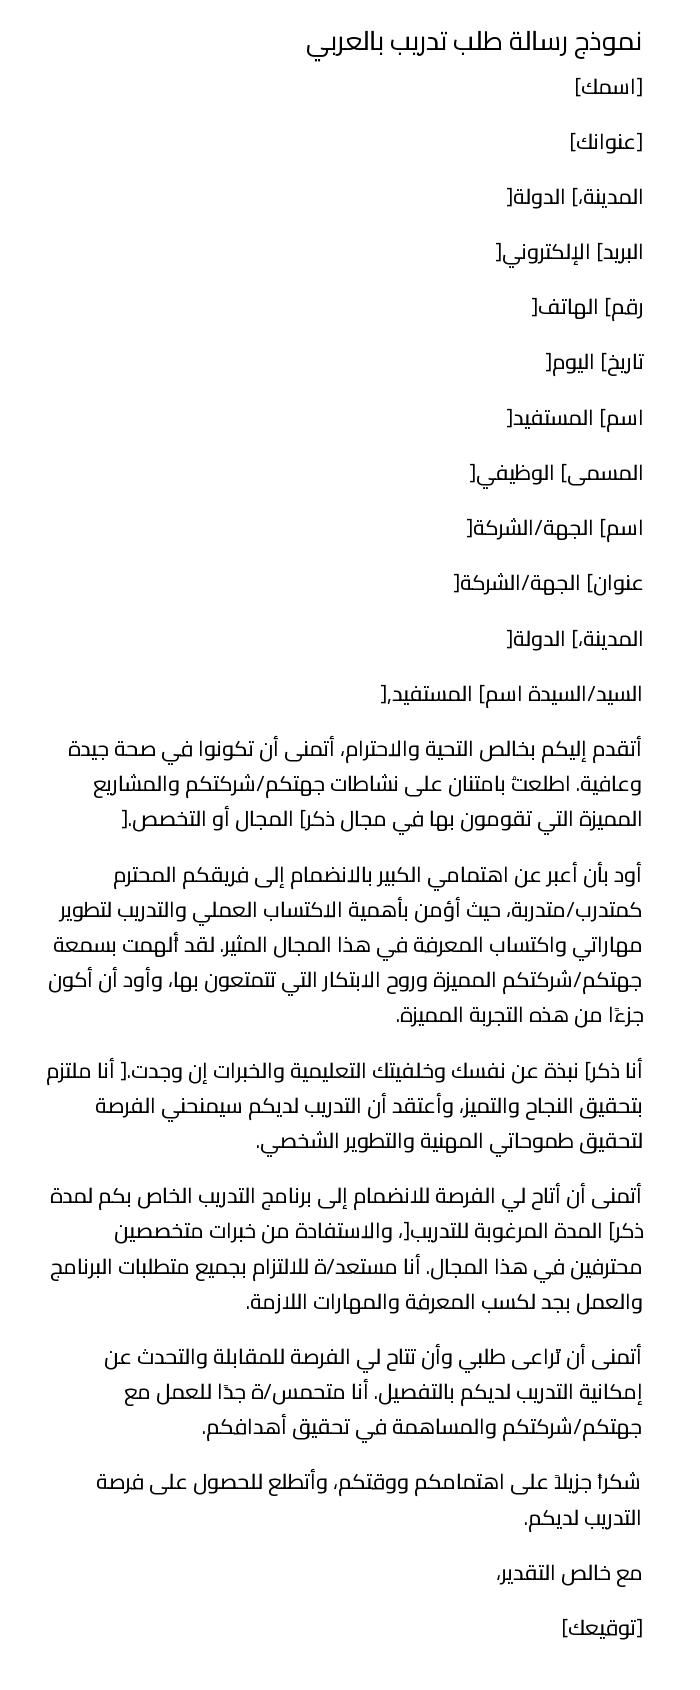 نموذج رسالة طلب تدريب بالعربي